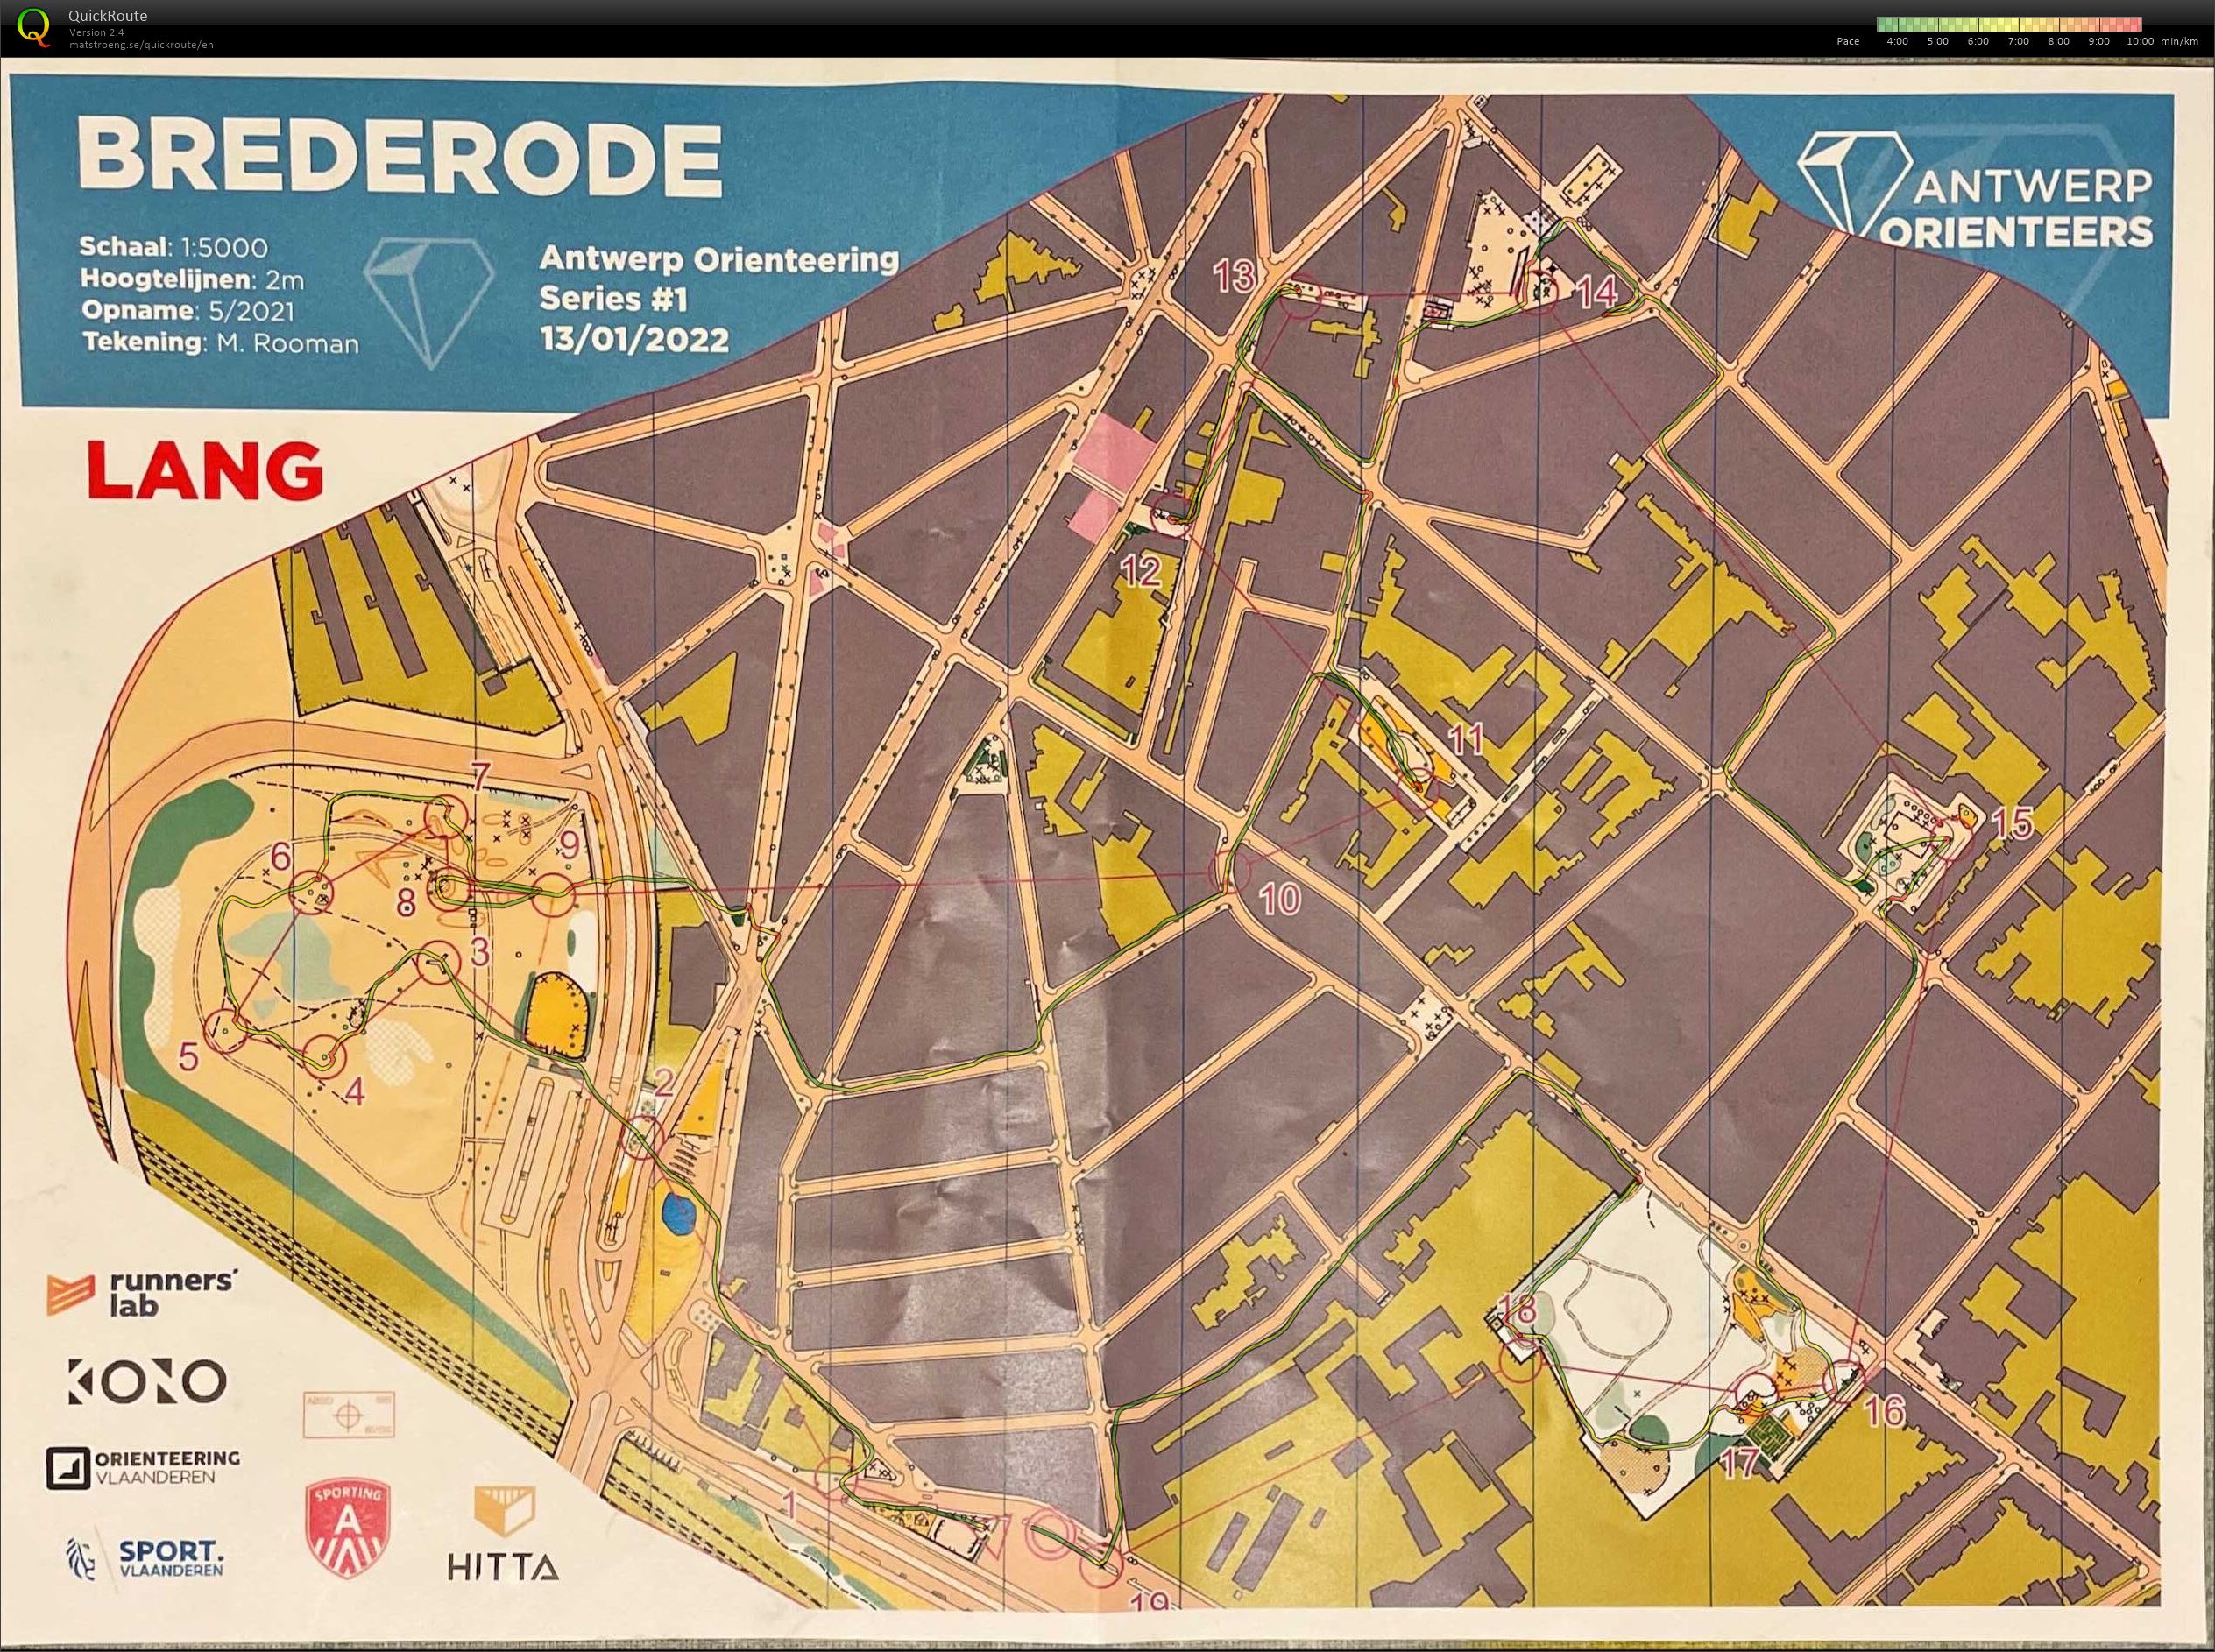 Antwerp Orienteering Series - Brederode - Lang (13-01-2022)